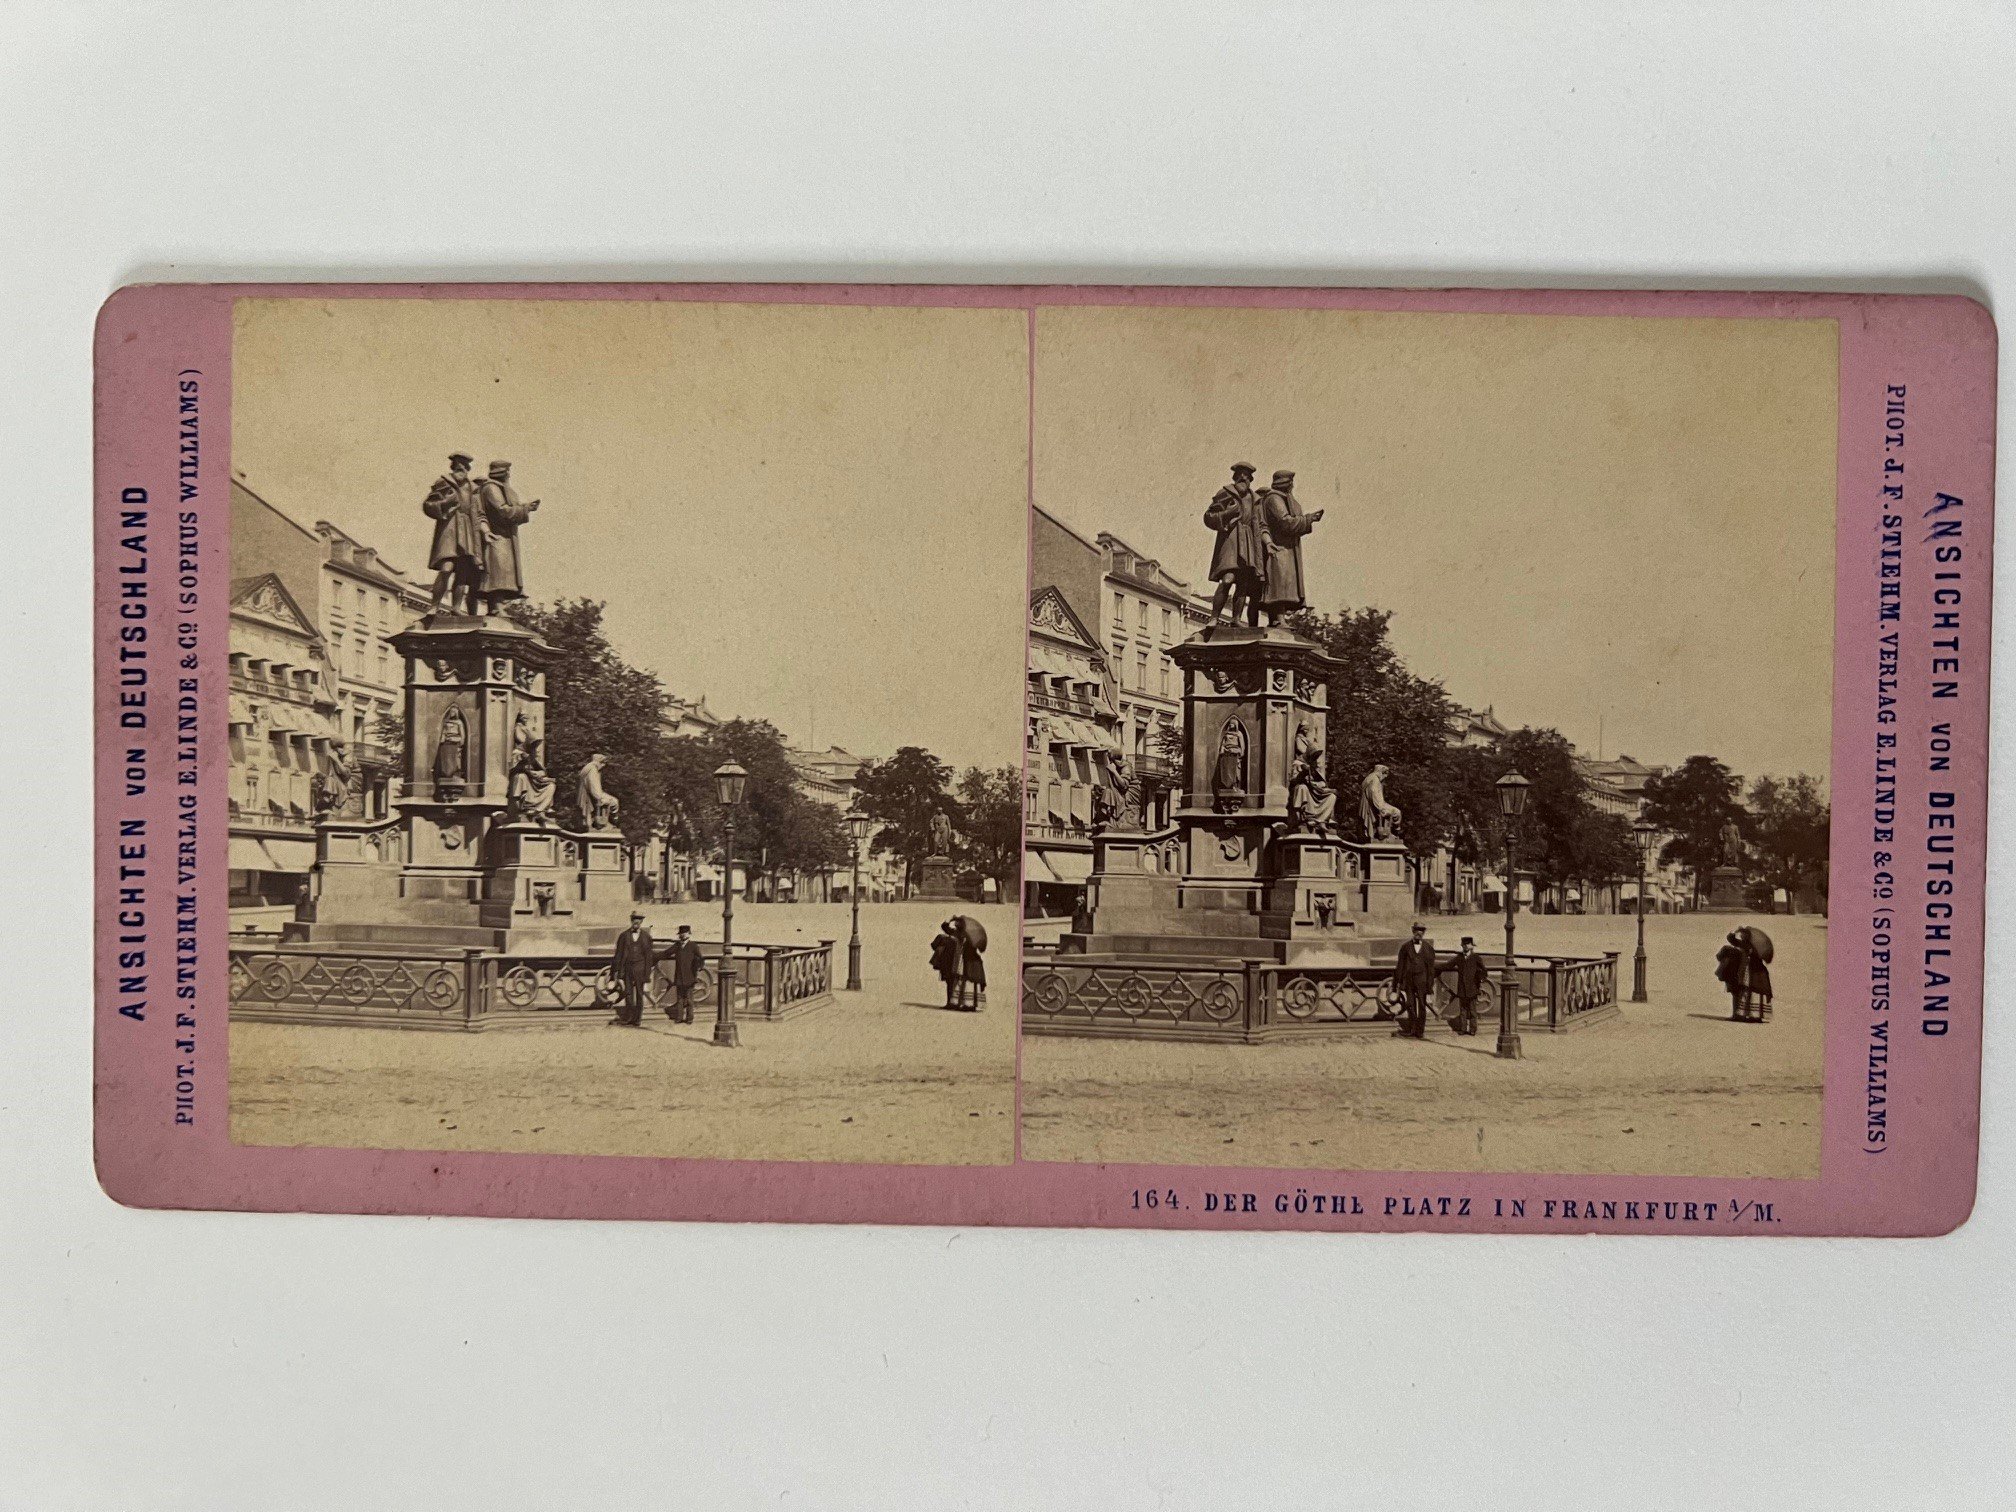 Stereobild, Johann Friedrich Stiehm, Frankfurt, Nr. 164, Der Göthe-Platz, ca. 1880. (Taunus-Rhein-Main - Regionalgeschichtliche Sammlung Dr. Stefan Naas CC BY-NC-SA)